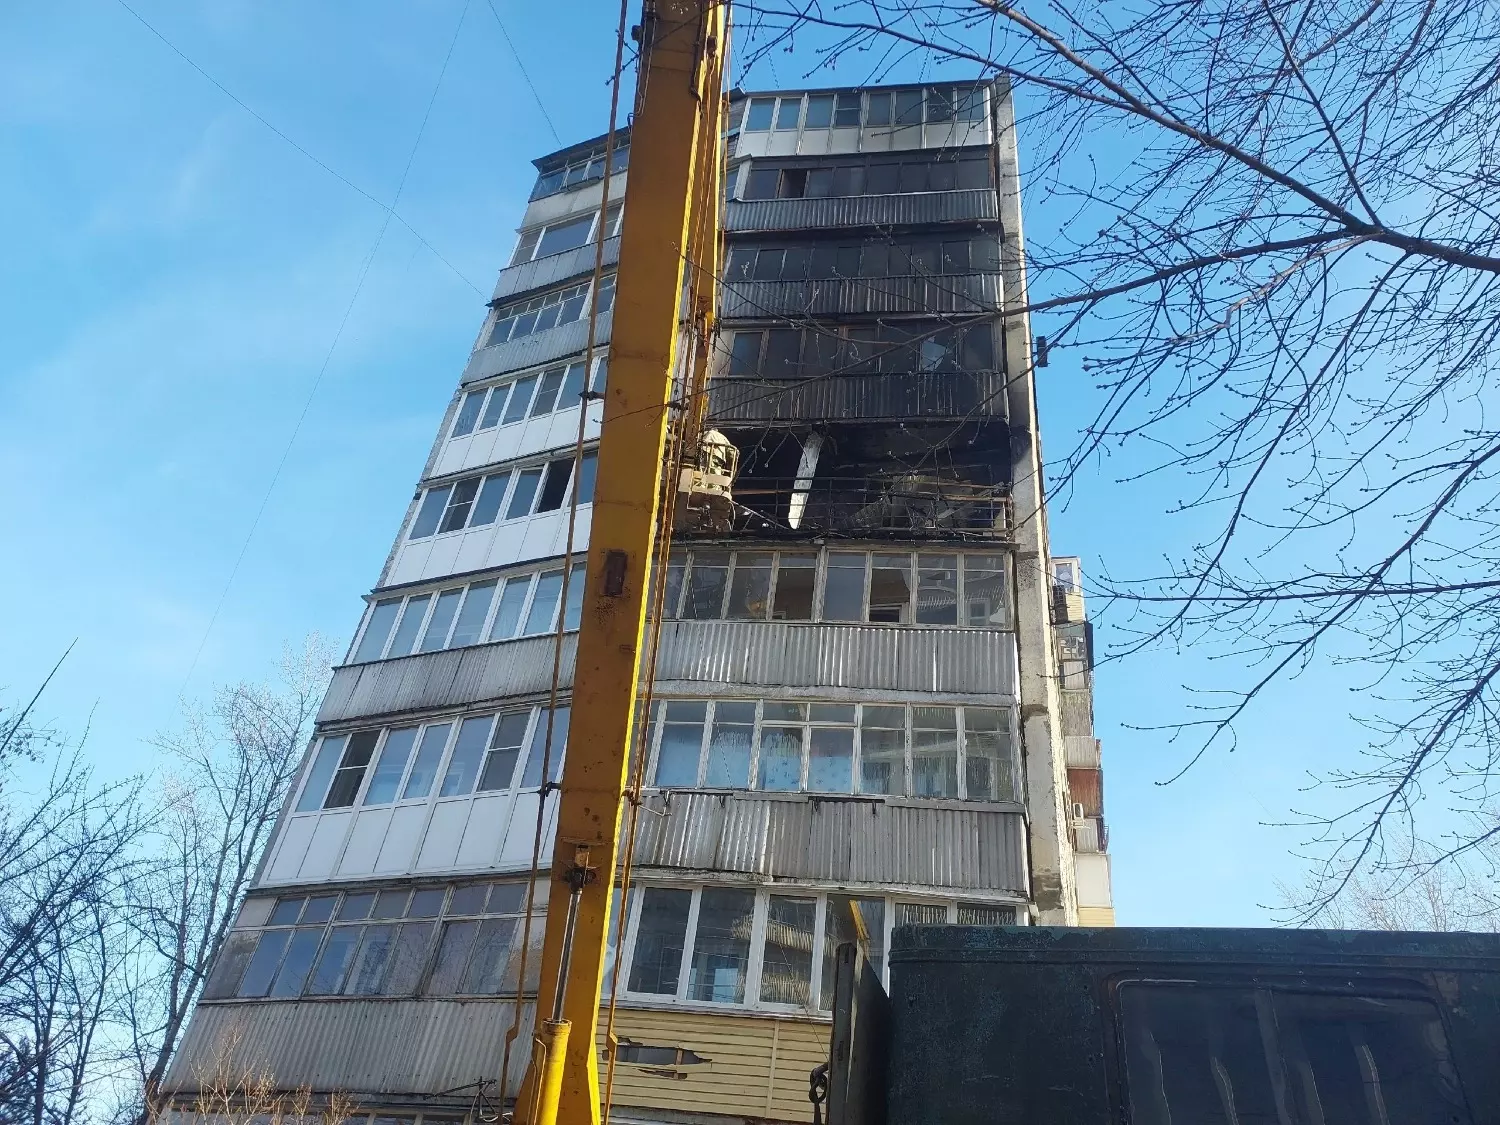 Дом №37 на Фучика в Нижнем Новгороде после взрыва